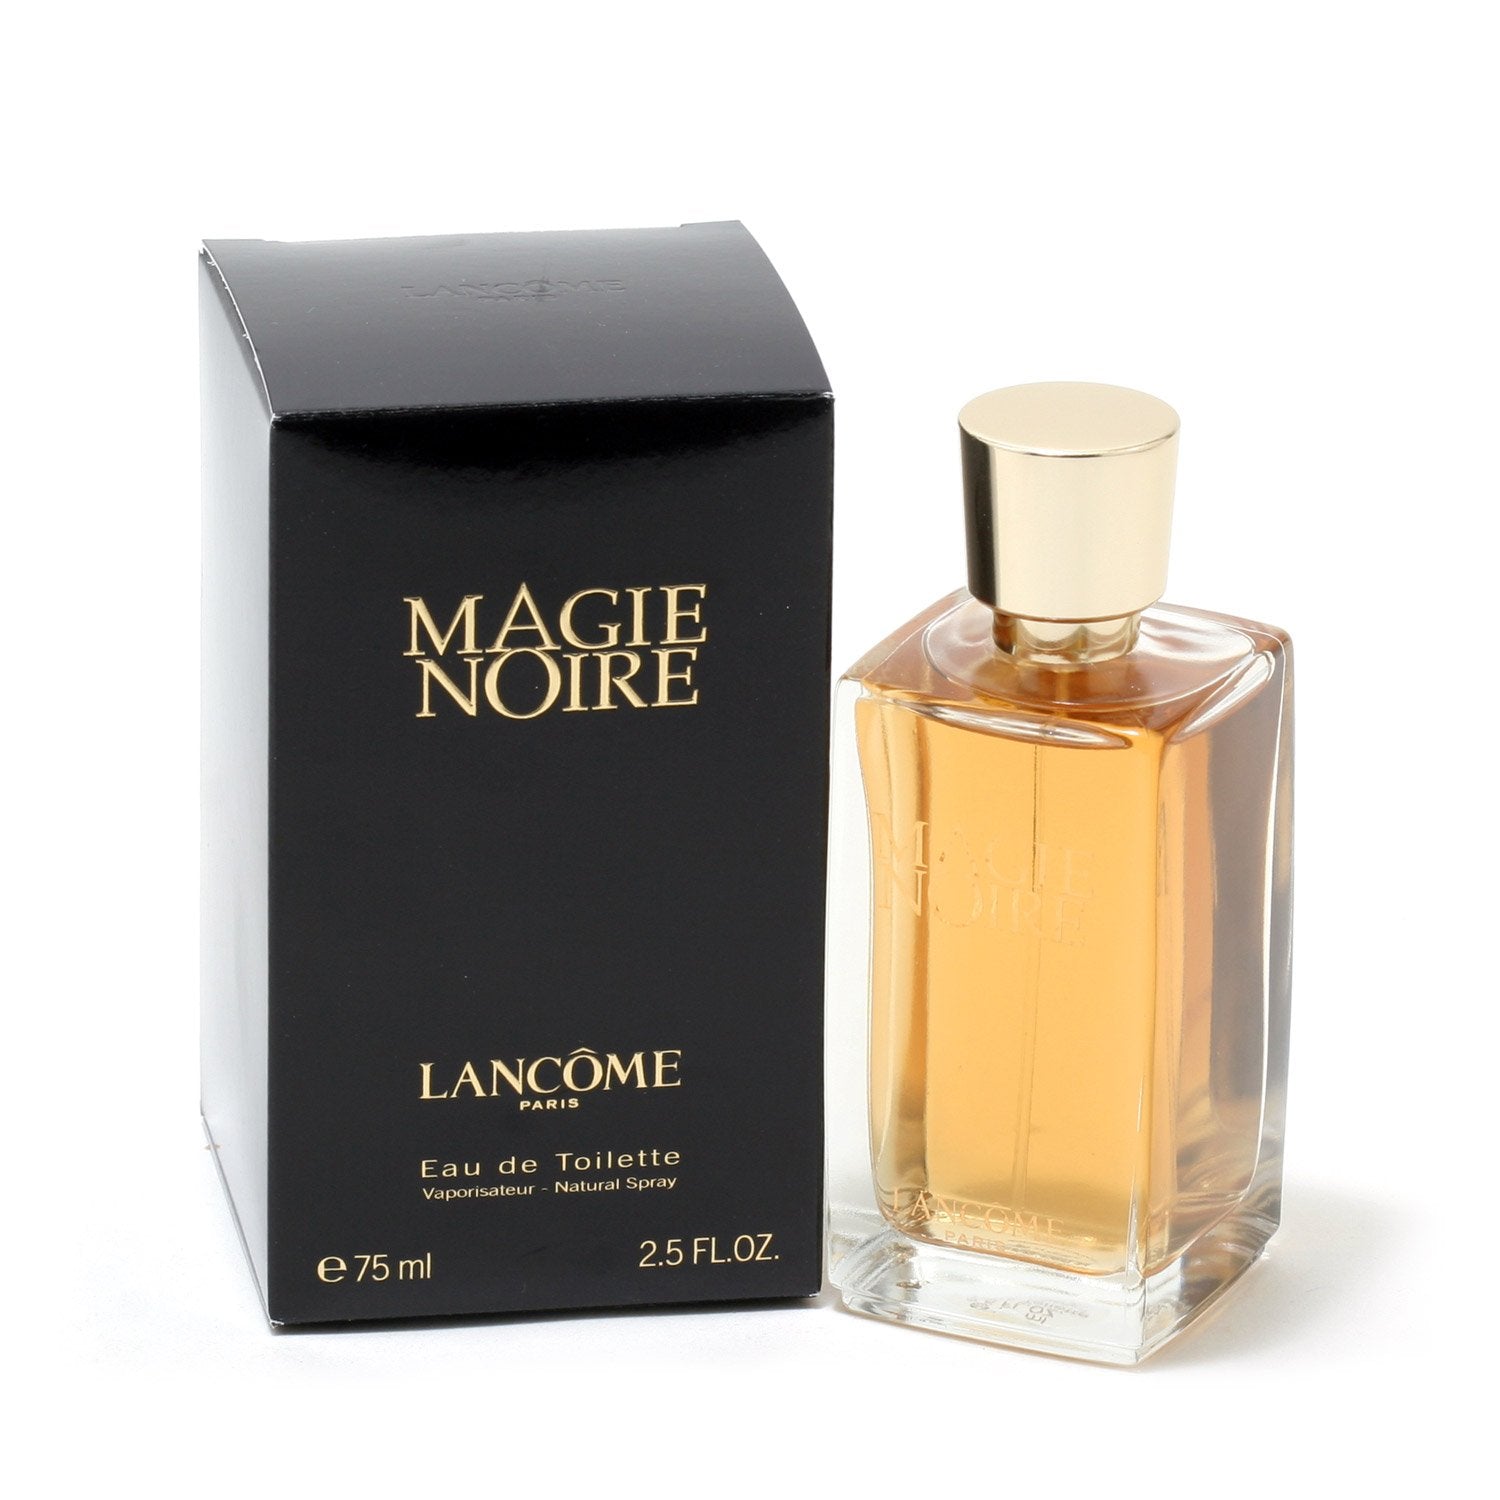 Perfume - MAGIE NOIRE FOR WOMEN BY LANCOME - EAU DE TOILETTE SPRAY, 2.5 OZ